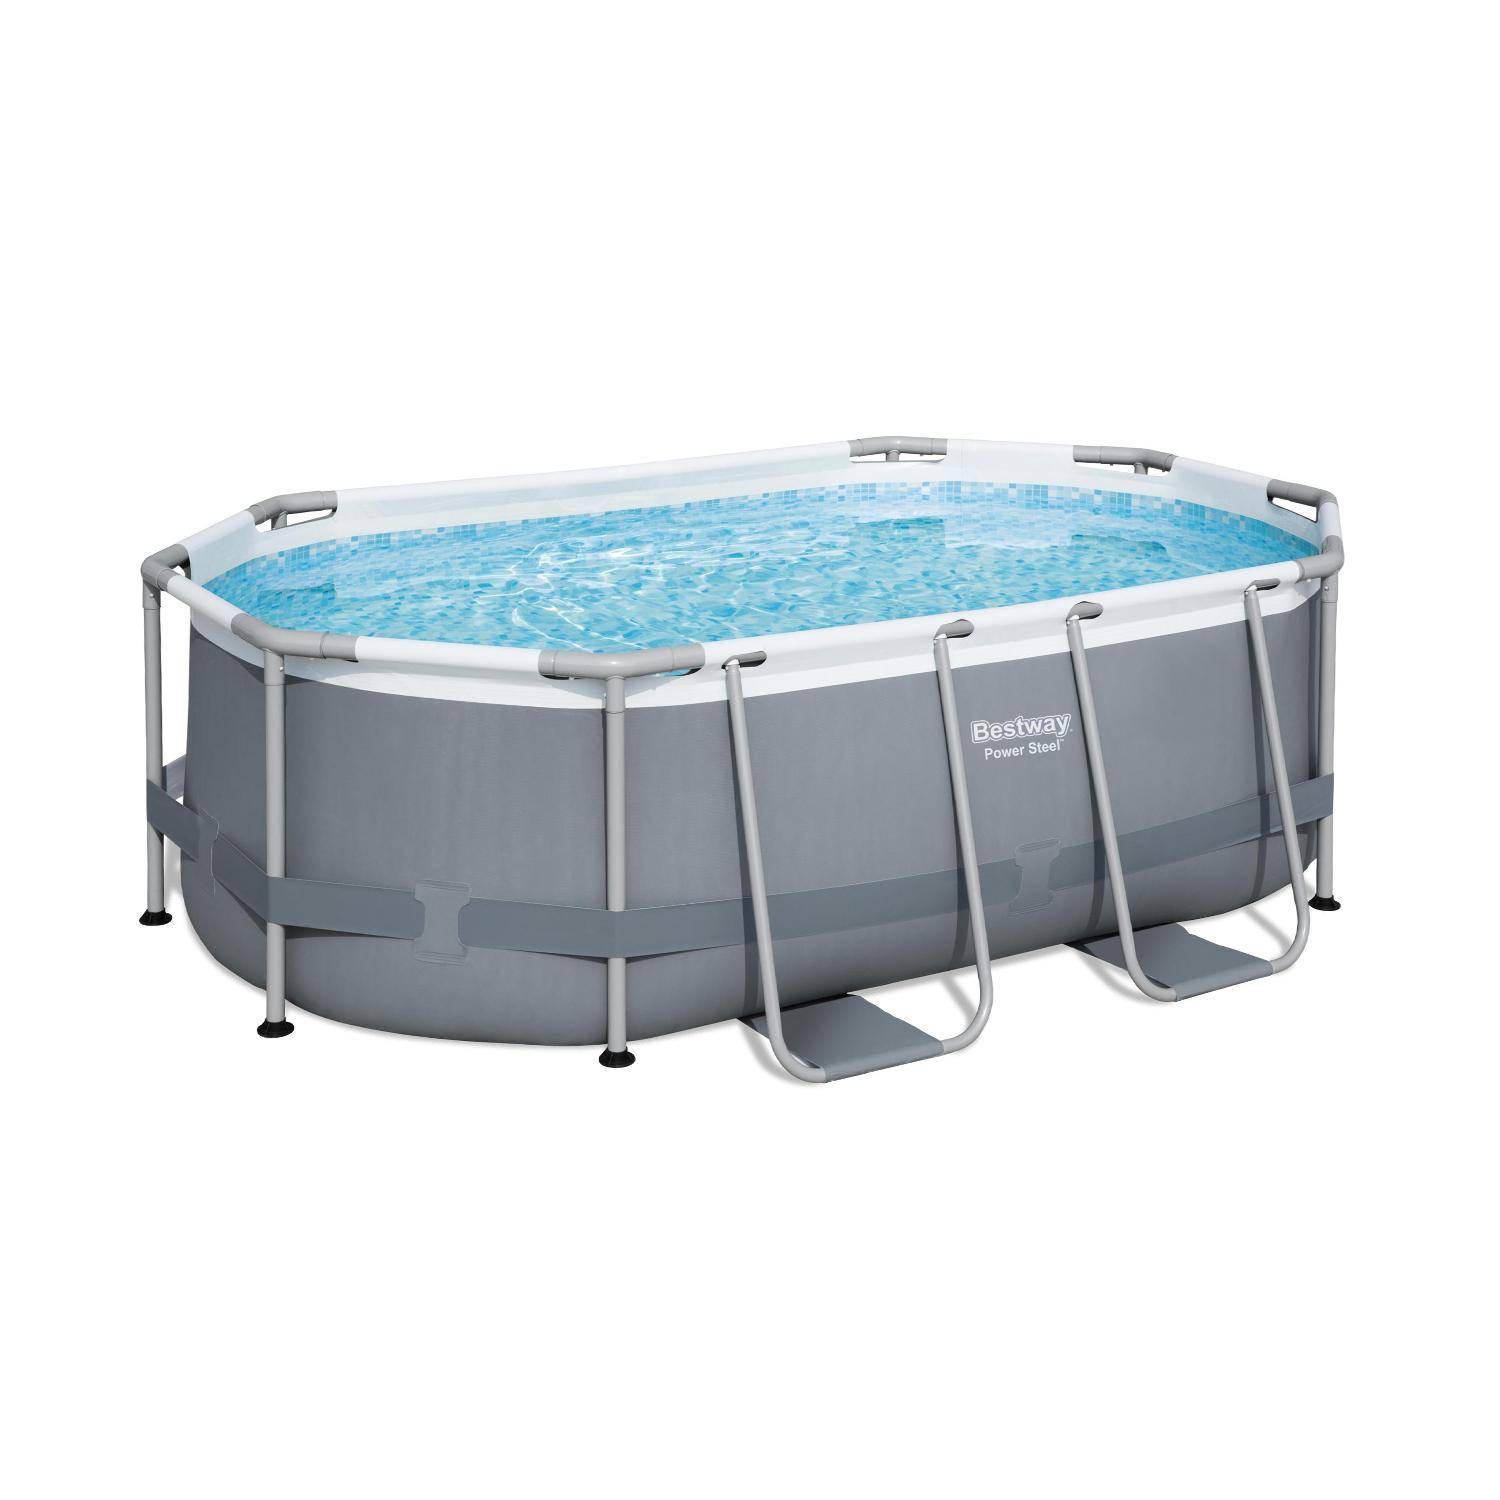 Kit piscine complet BESTWAY – Spinelle grise – piscine ovale tubulaire 3x2 m avec bâche de protection noire, pompe de filtration et kit de réparation inclus  Photo2